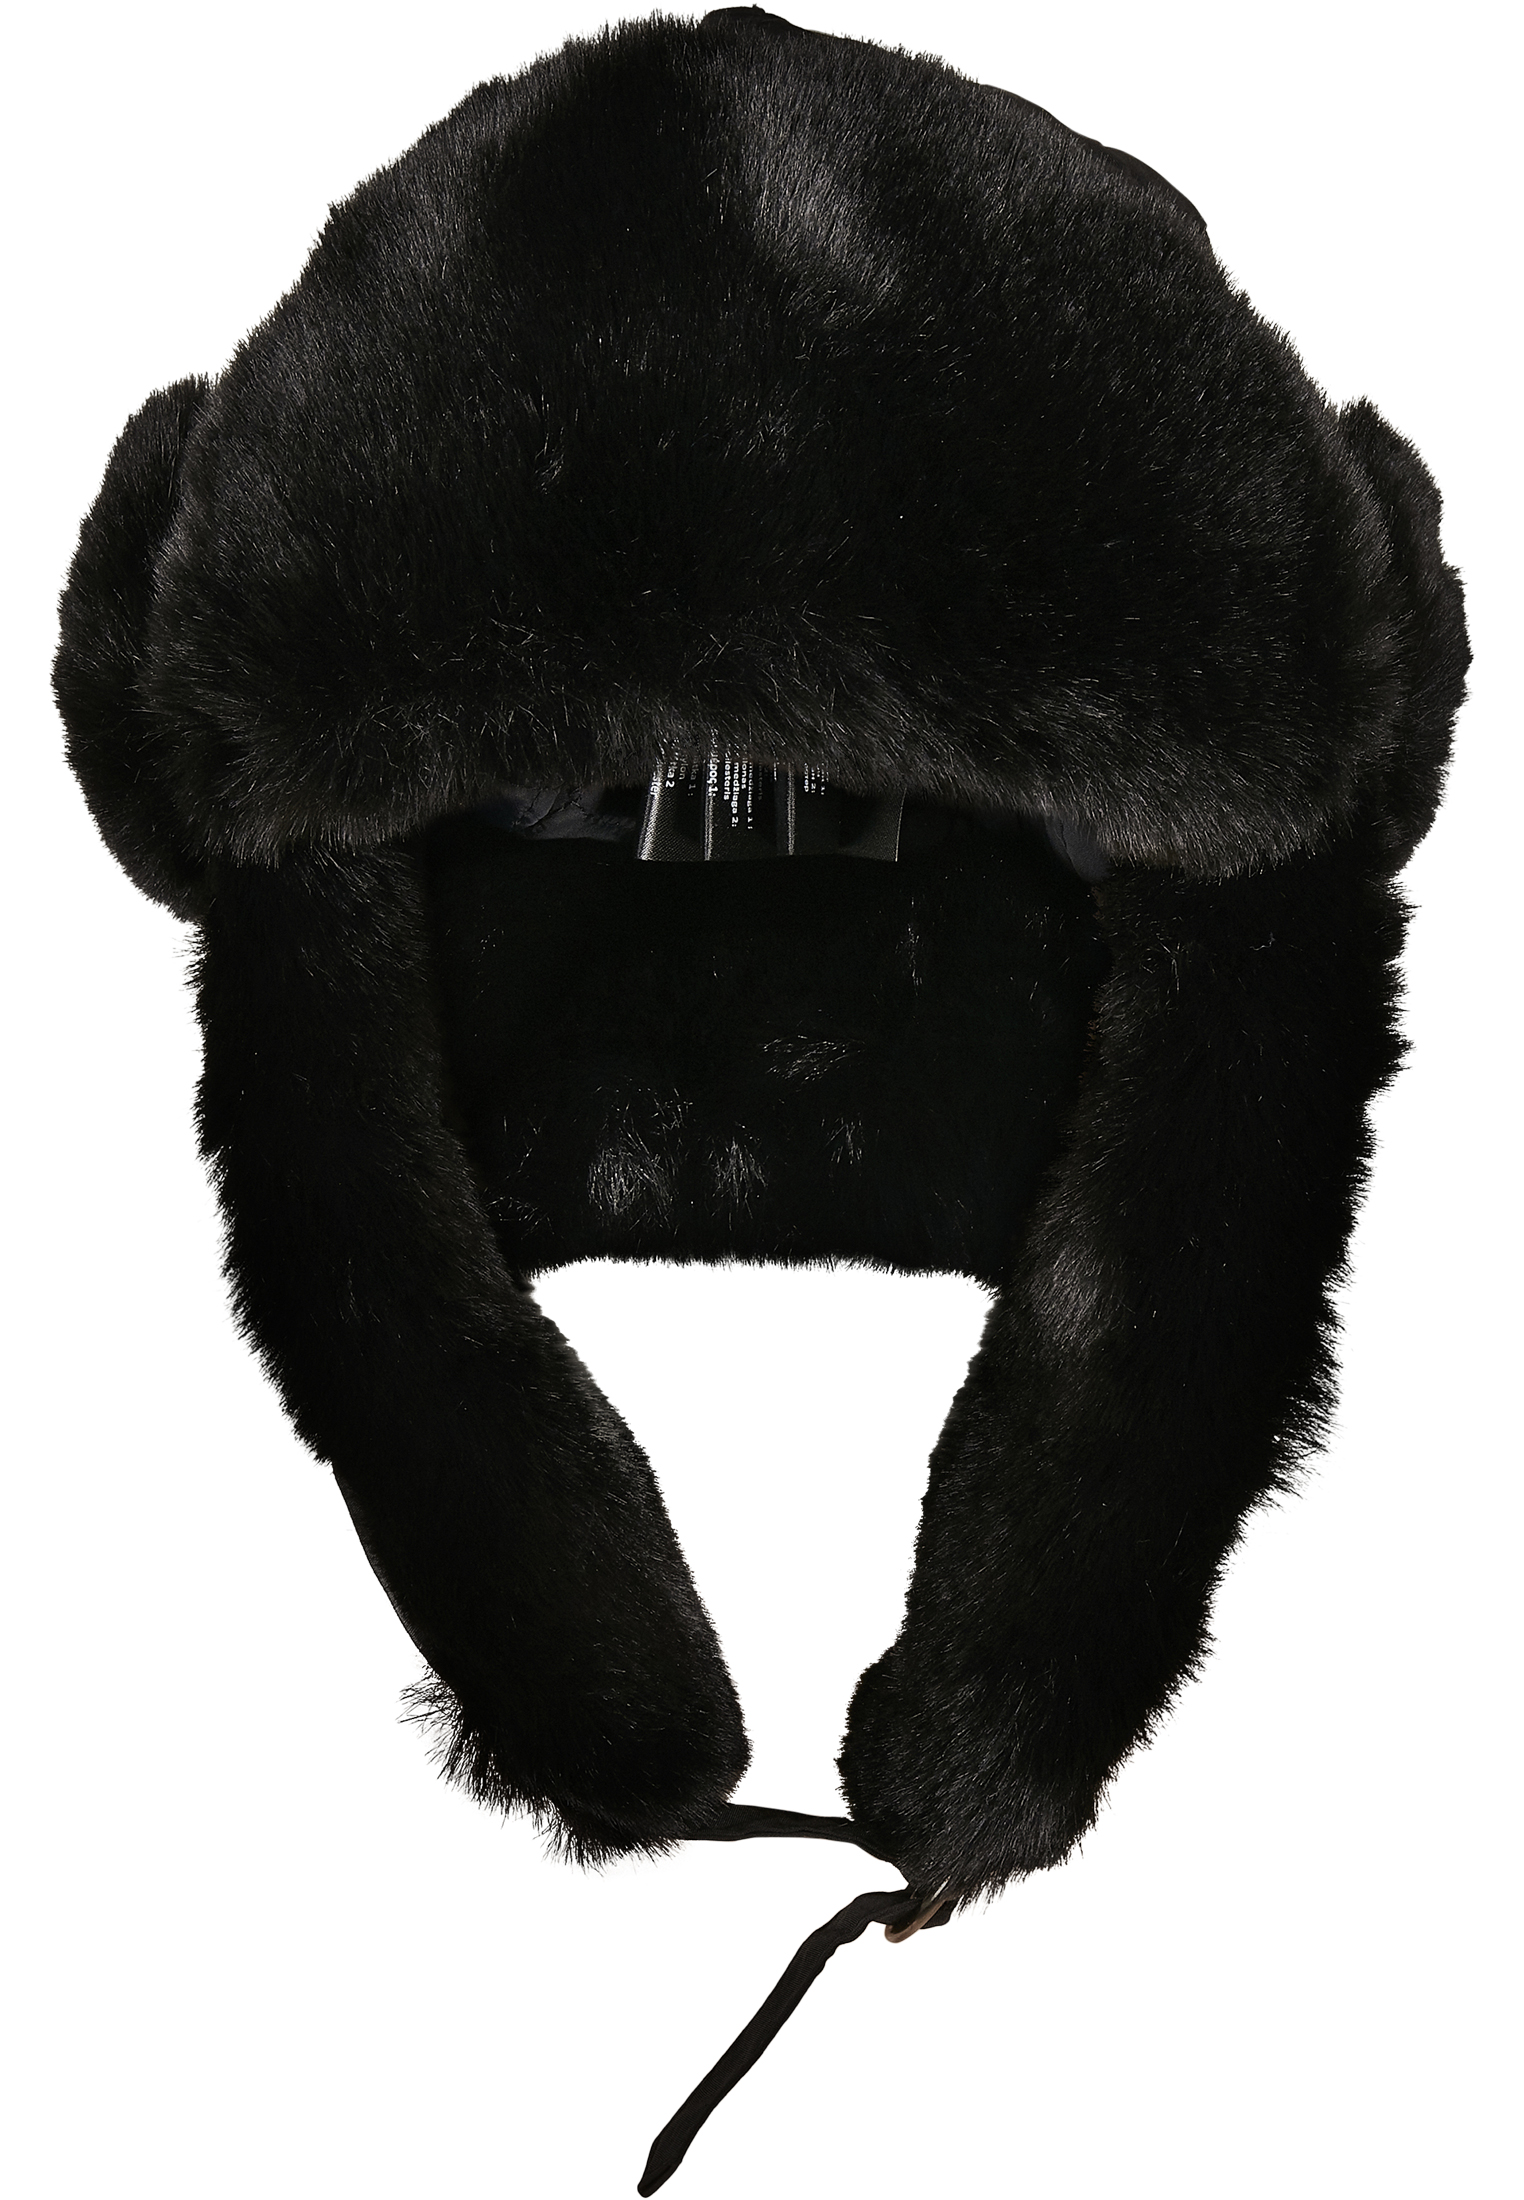 M?tzen Nylon Trapper Hat in Farbe black